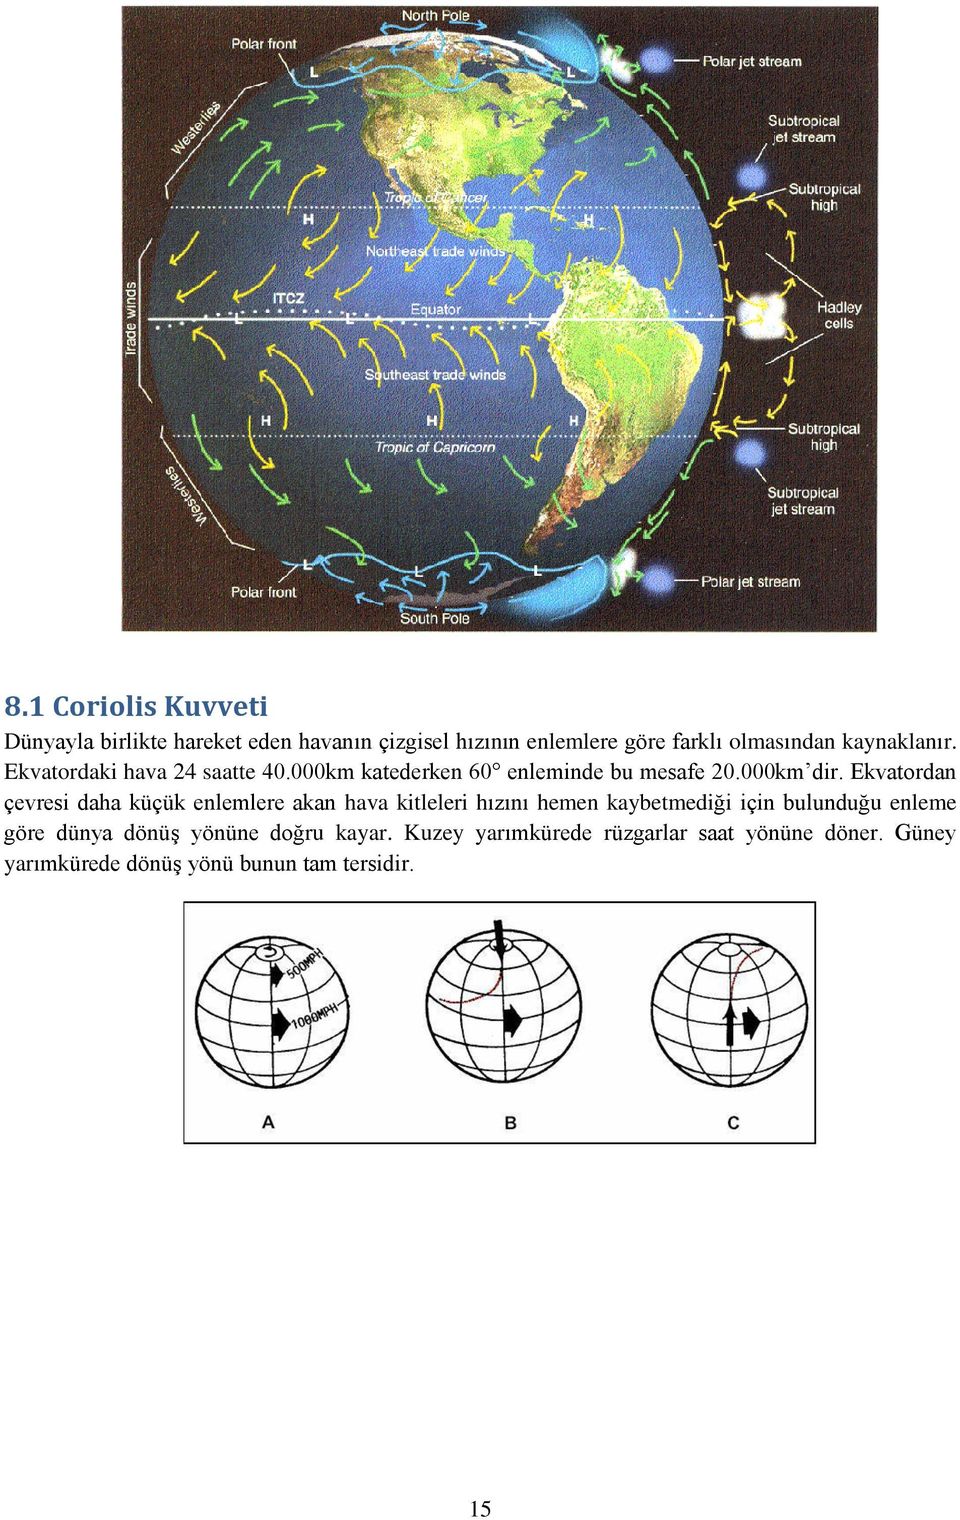 Ekvatordan çevresi daha küçük enlemlere akan hava kitleleri hızını hemen kaybetmediği için bulunduğu enleme göre